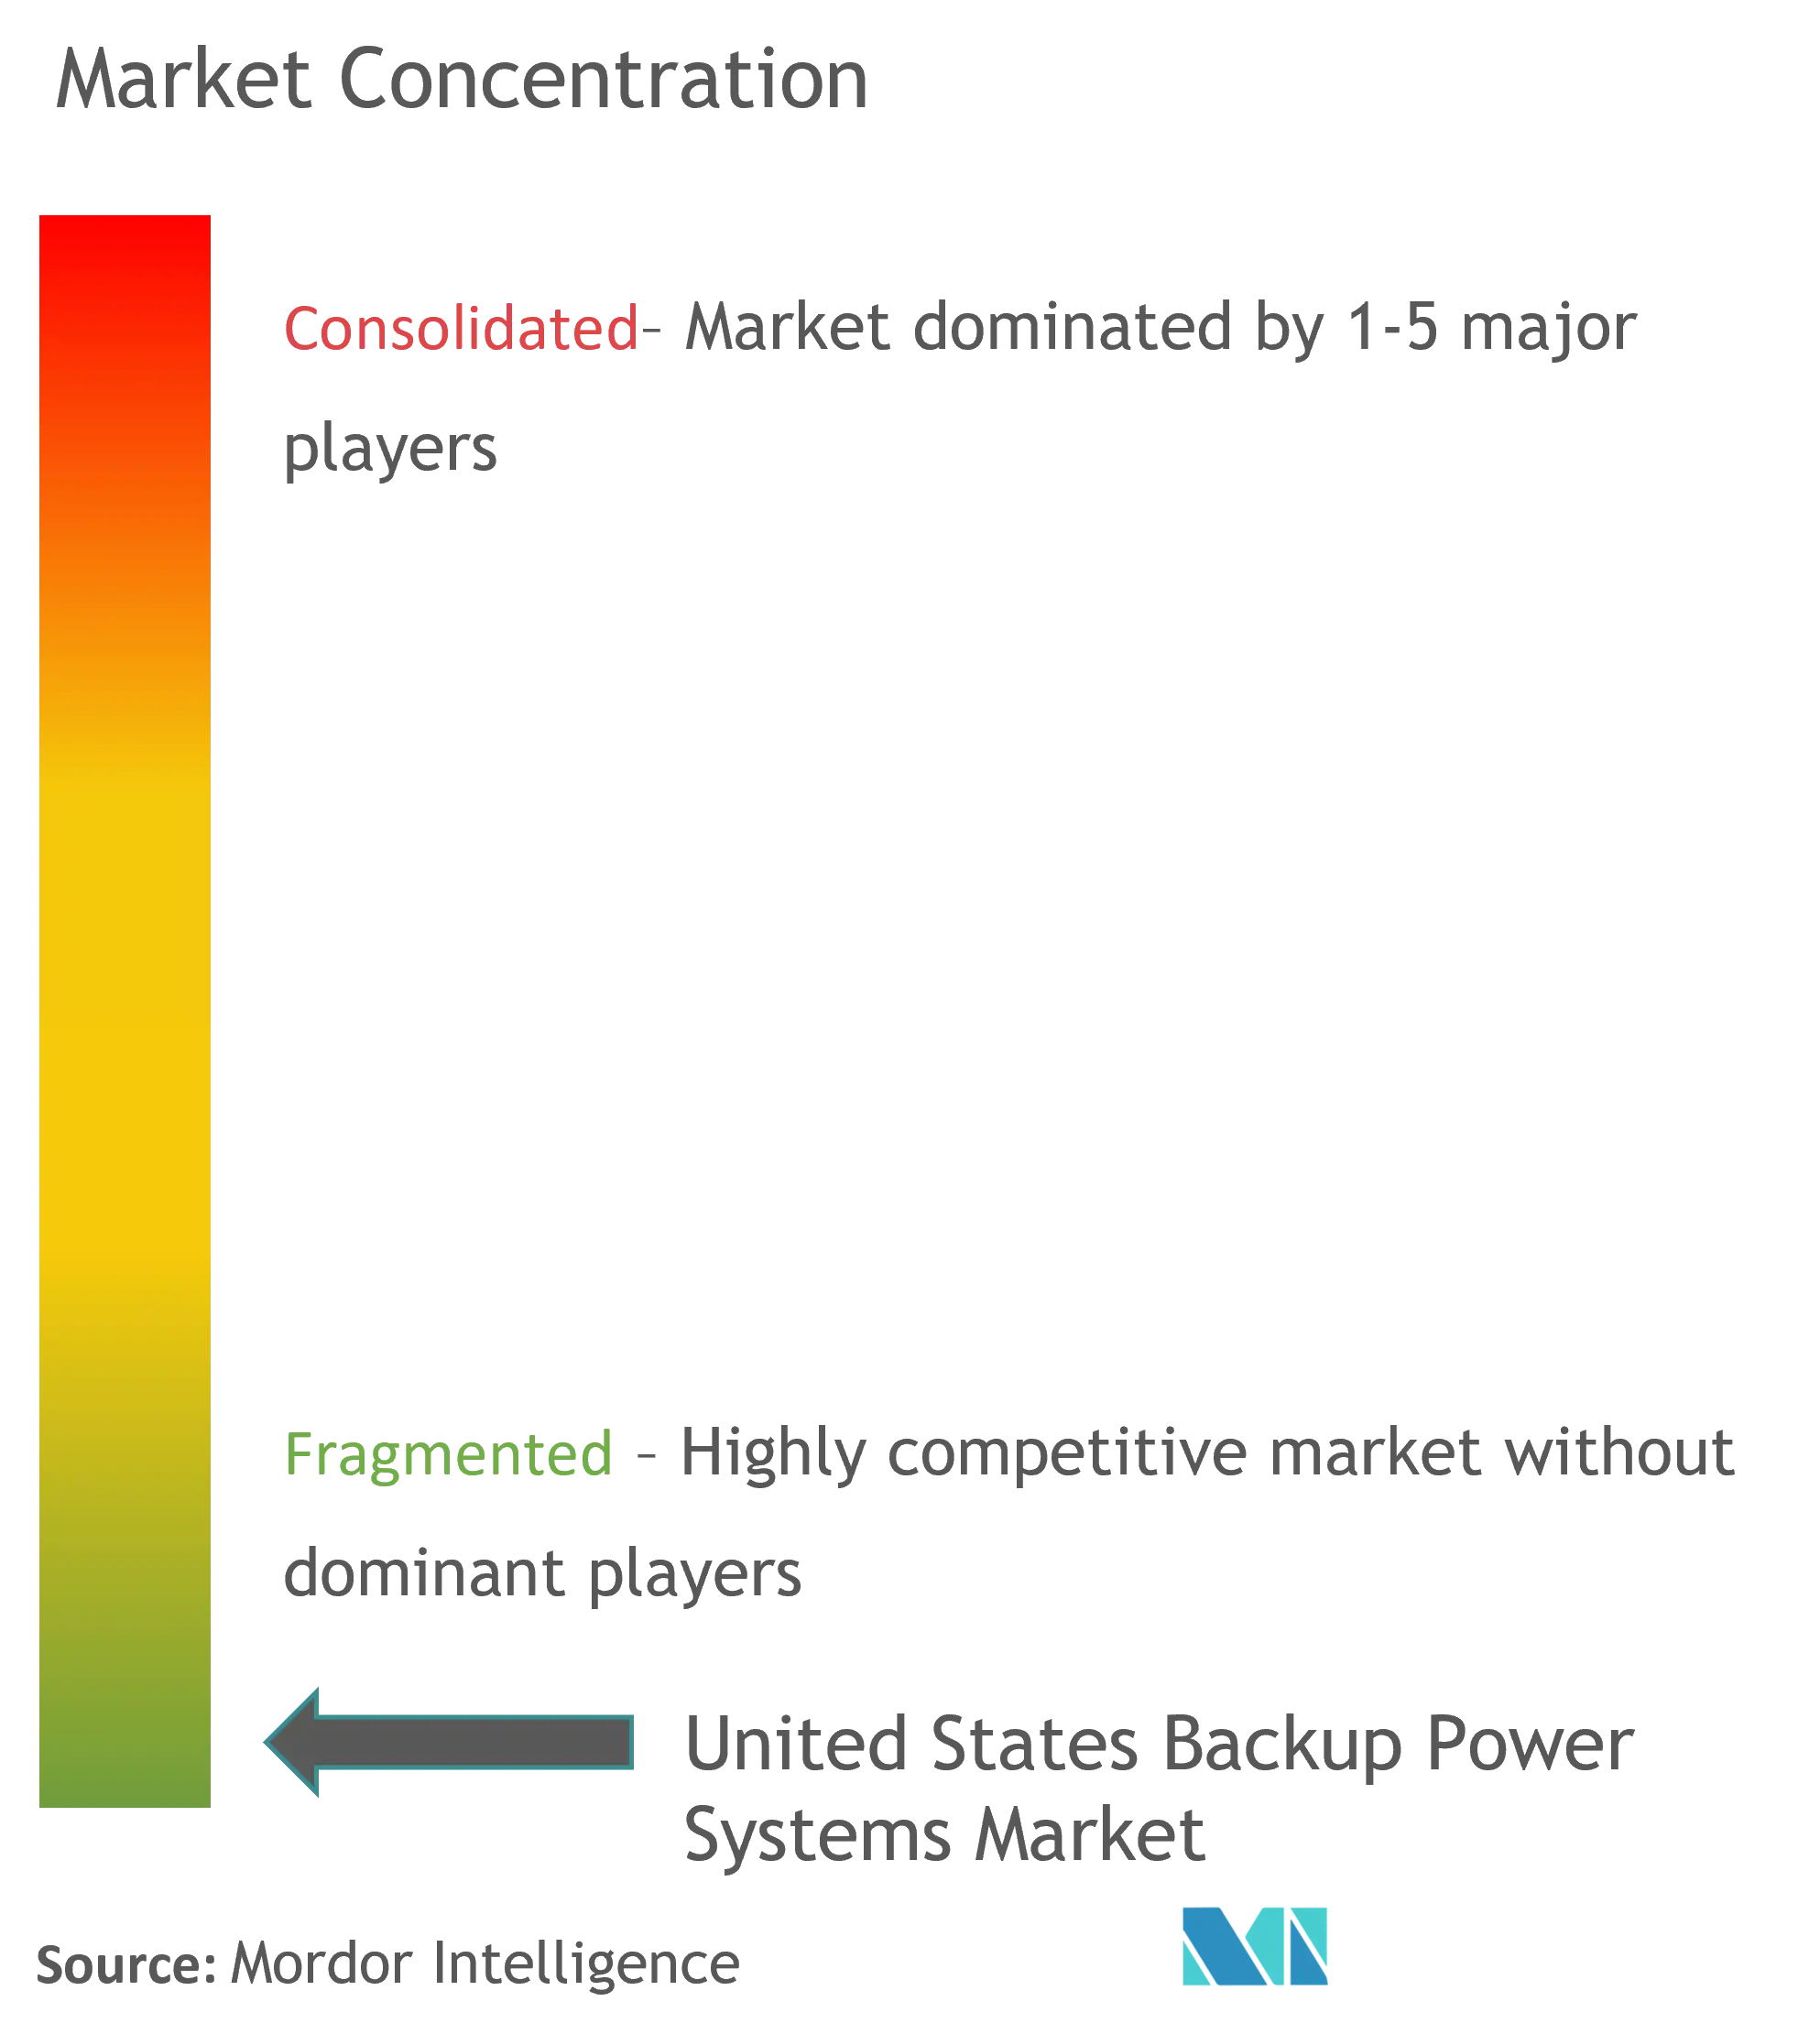 Marktkonzentration für Backup-Stromversorgungssysteme in den Vereinigten Staaten